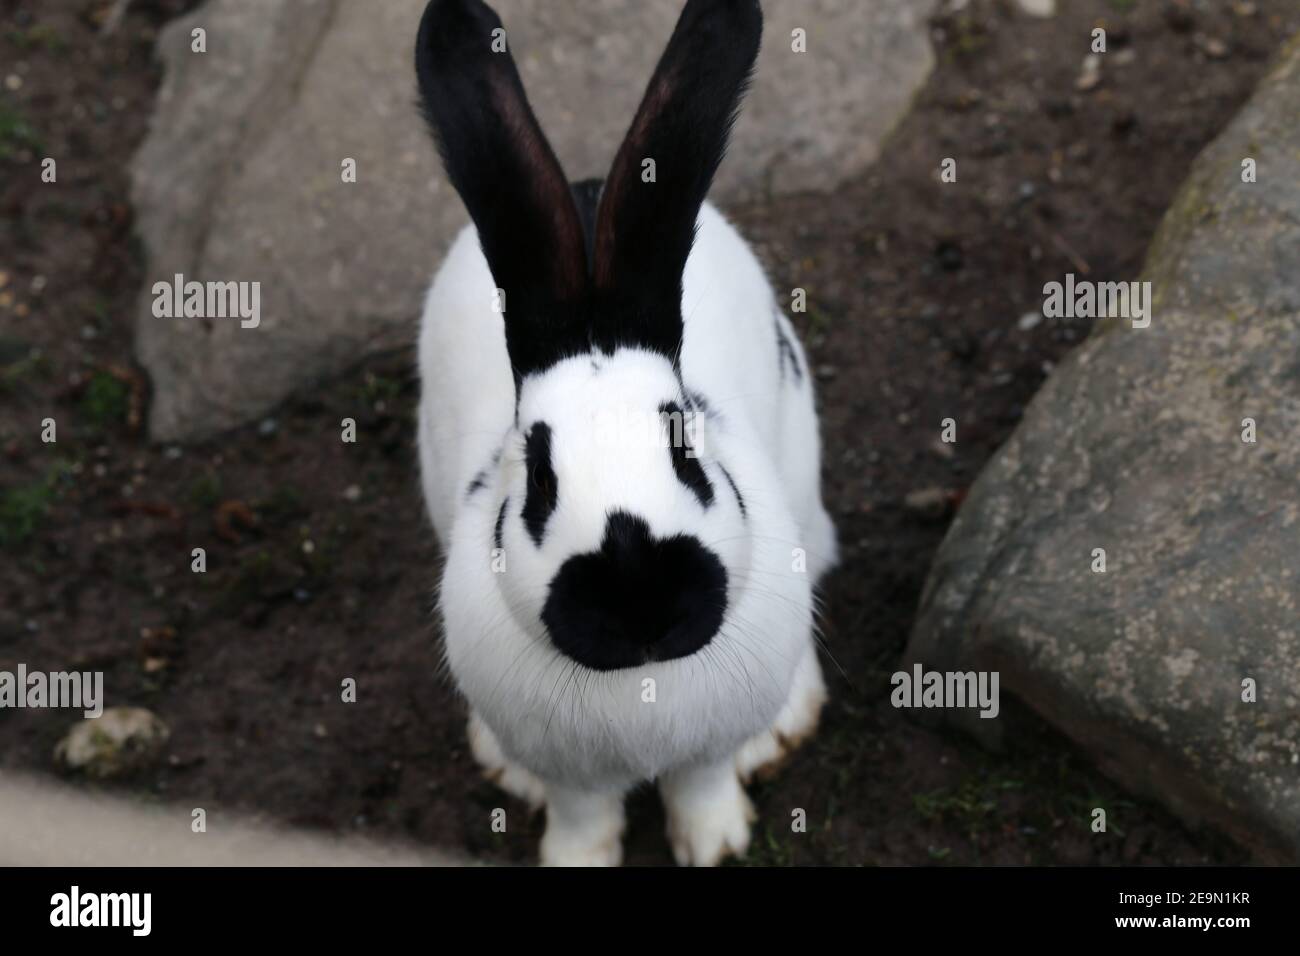 Joli lapin noir et blanc avec quelques points noirs et des parties noires. Adorable et moelleux animal photographié à l'extérieur dans un parc par beau temps. Banque D'Images